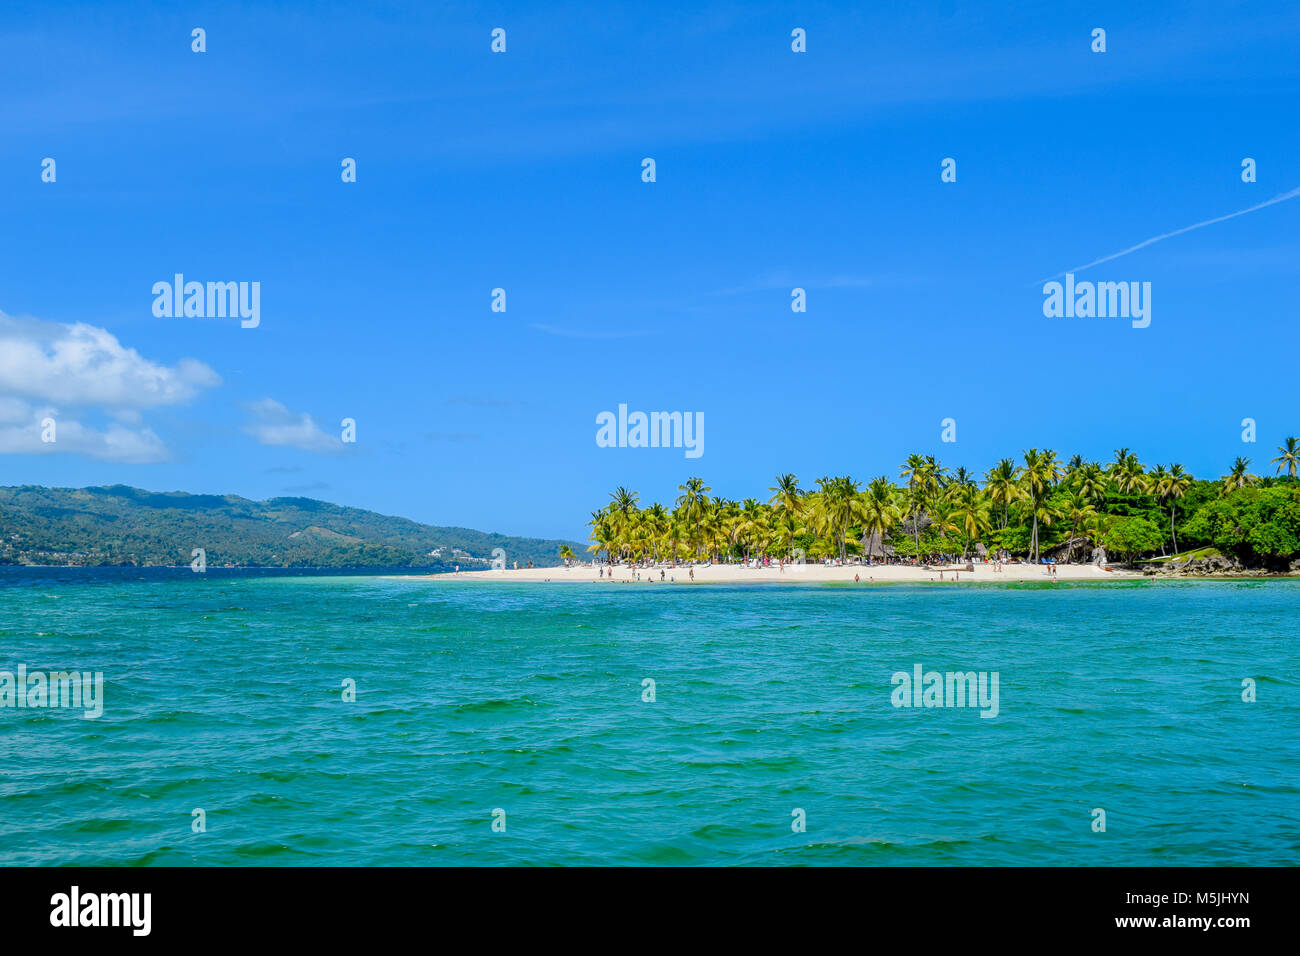 Belle île des caraïbes avec plage de sable blanc, ciel bleu, chaises longues et beaucoup de palmiers, maison de sentiments, République dominicaine, tourisme Banque D'Images